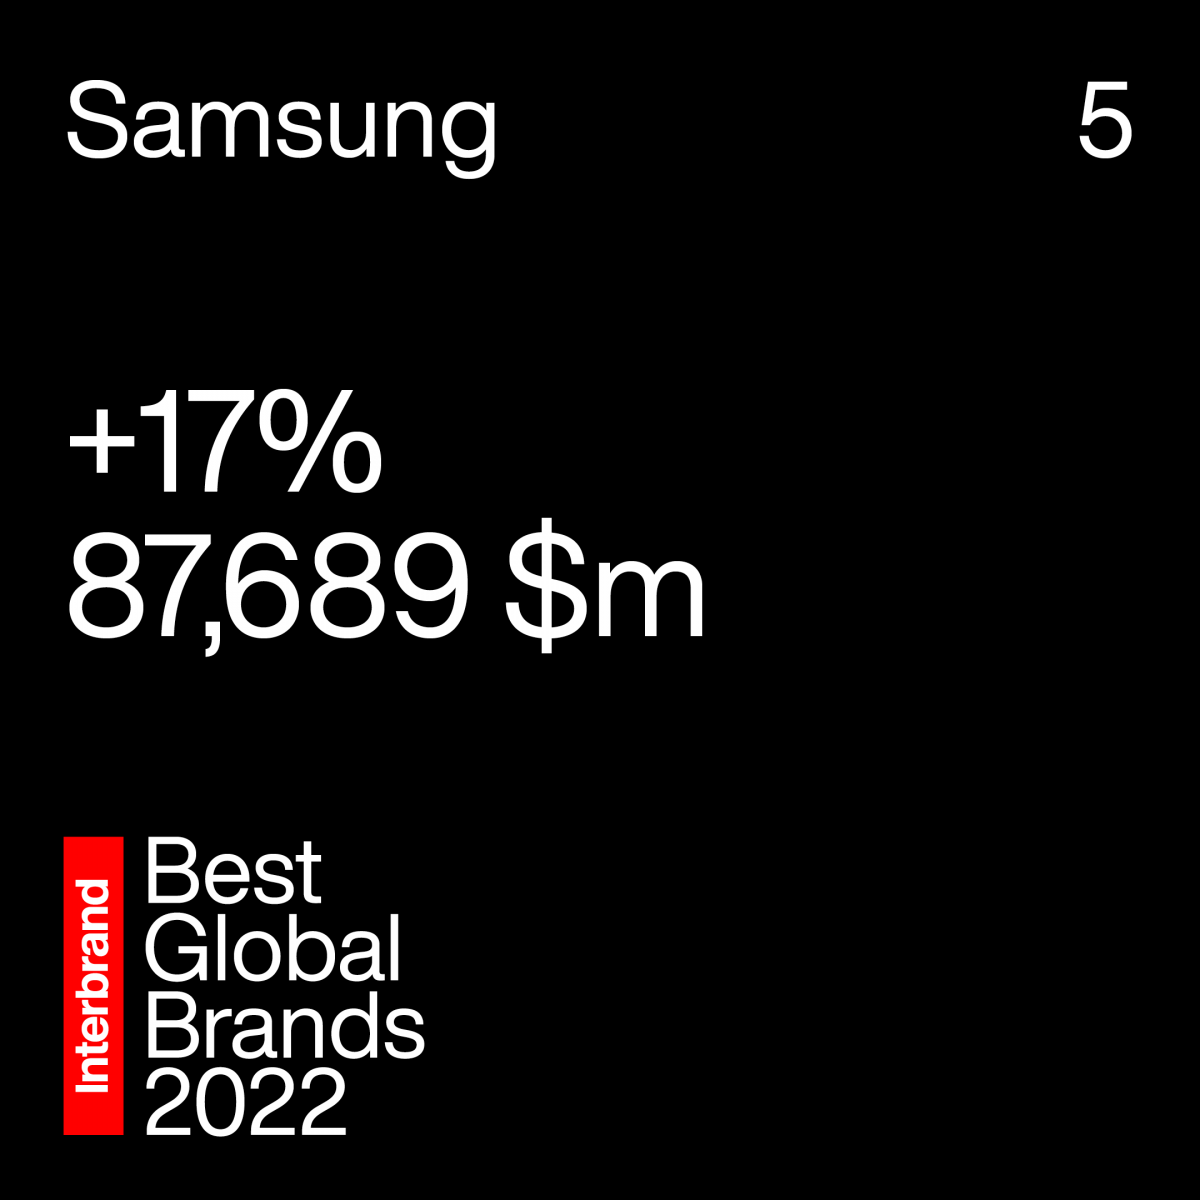 มูลค่าของแบรนด์ซัมซุง อิเลคโทรนิคส์ ติด 1 ใน 5 อันดับของ Best Global Brands 2022 เติบโตขึ้นระดับตัวเลข 2 หลัก 2